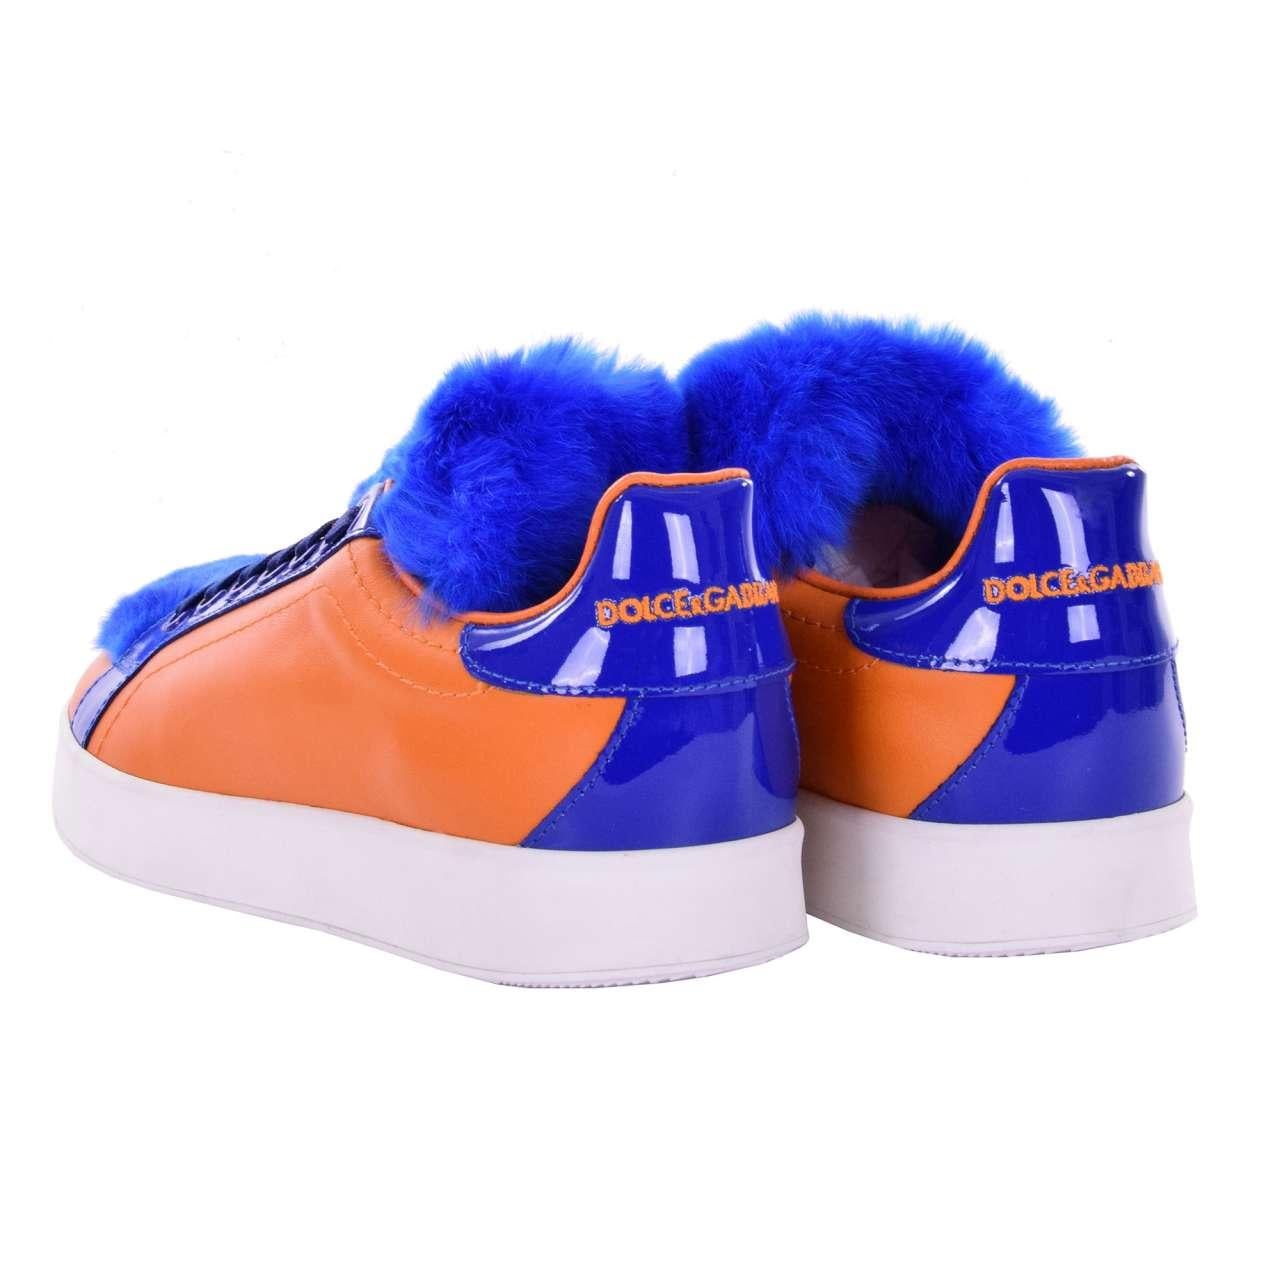 Dolce & Gabbana - Fur and Leather Sneaker PORTOFINO Orange Blue EUR 37 In Excellent Condition For Sale In Erkrath, DE